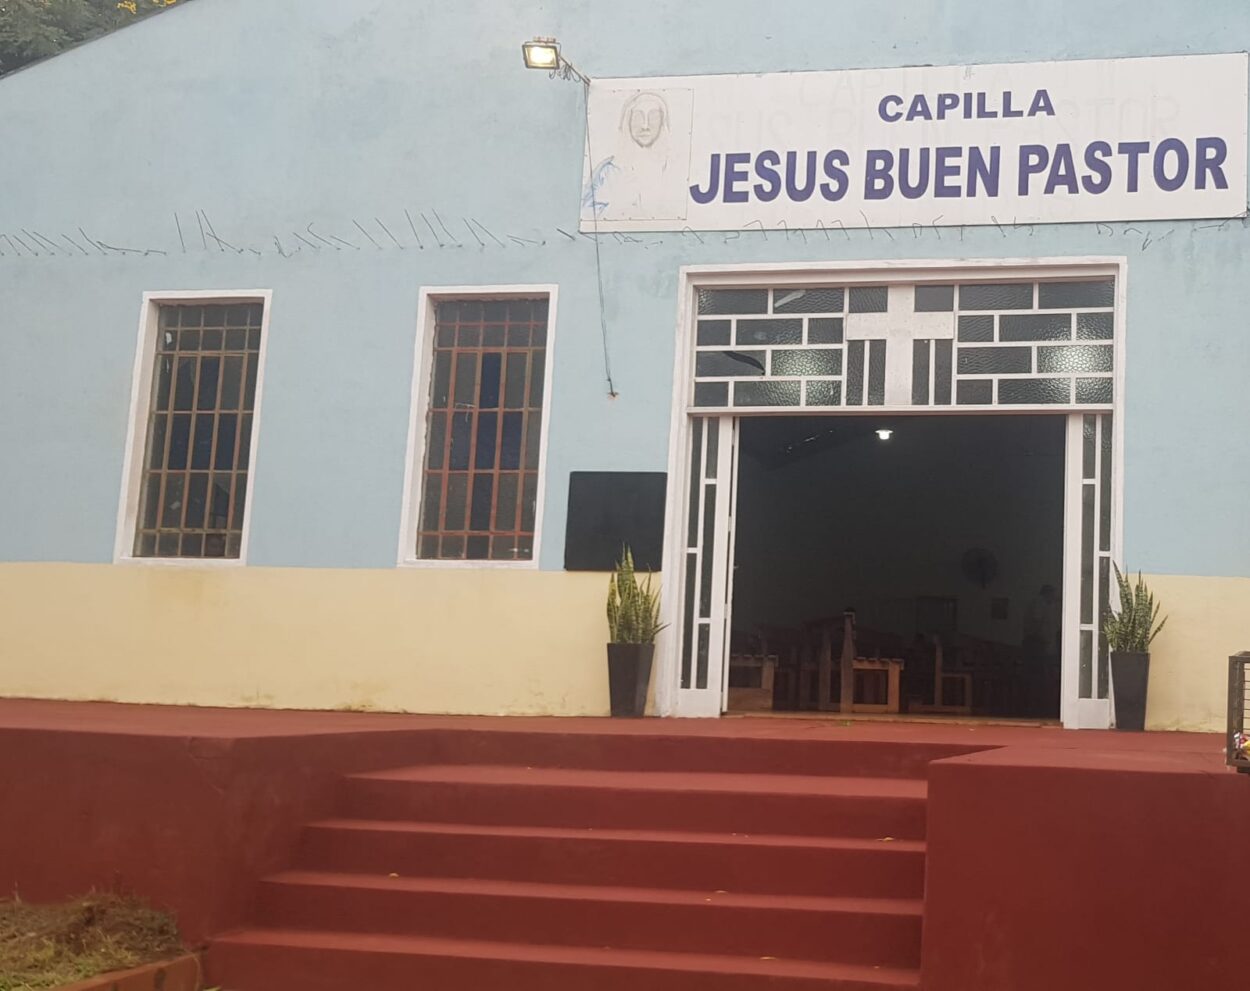 Capilla “Jesús Buen Pastor” celebrará su fiesta patronal este domingo 21 imagen-9